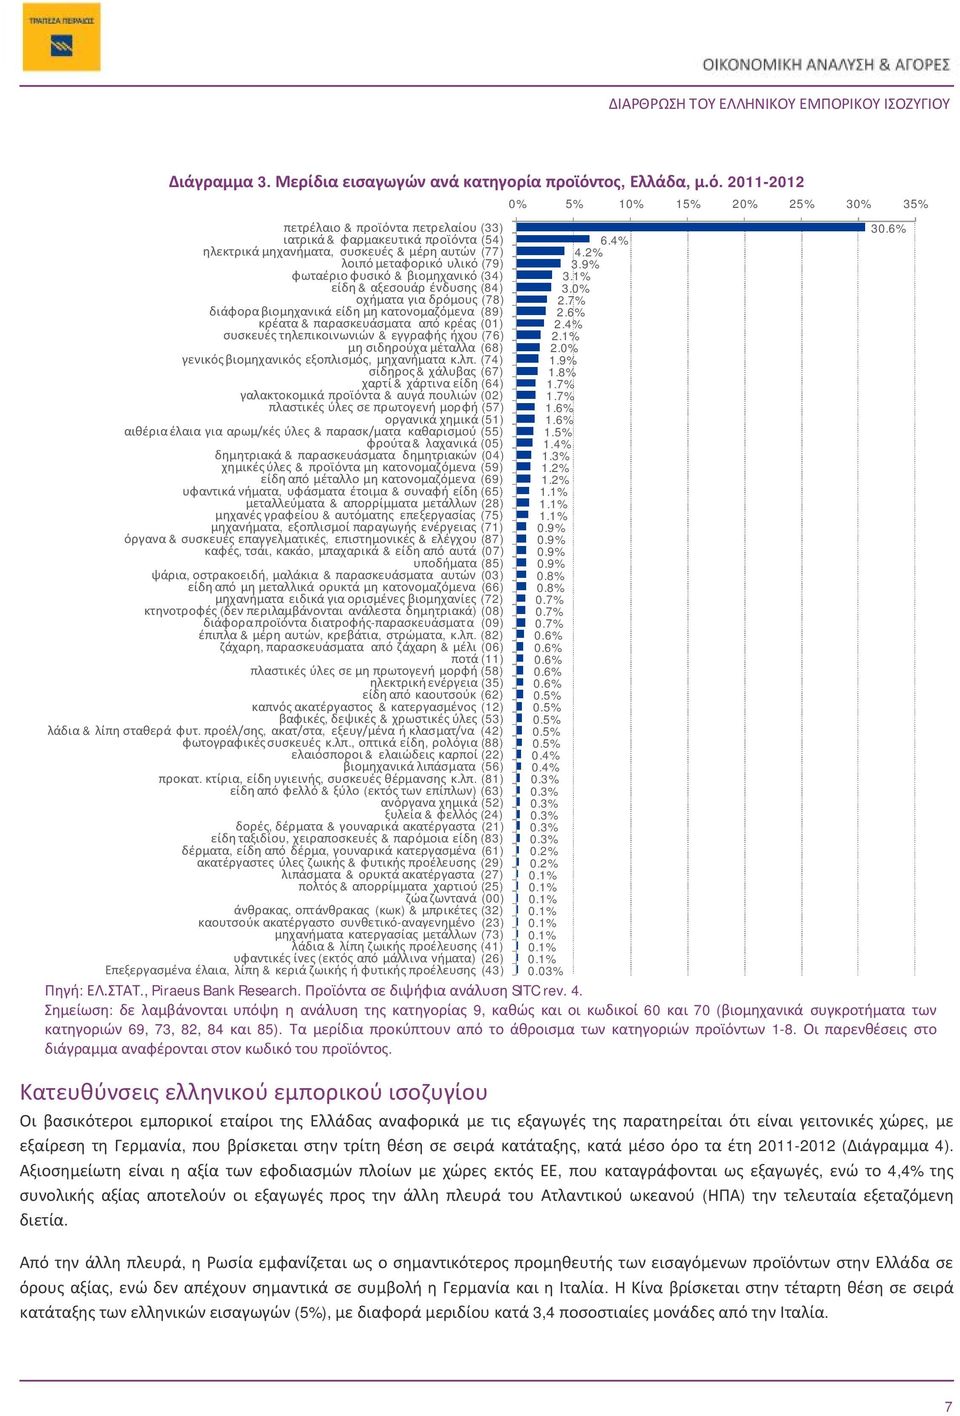 2011-2012 πετρέλαιο & προϊόντα πετρελαίου (33) ιατρικά & φαρμακευτικά προϊόντα (54) ηλεκτρικά μηχανήματα, συσκευές & μέρη αυτών (77) λοιπό μεταφορικό υλικό (79) φωταέριο φυσικό & βιομηχανικό (34)